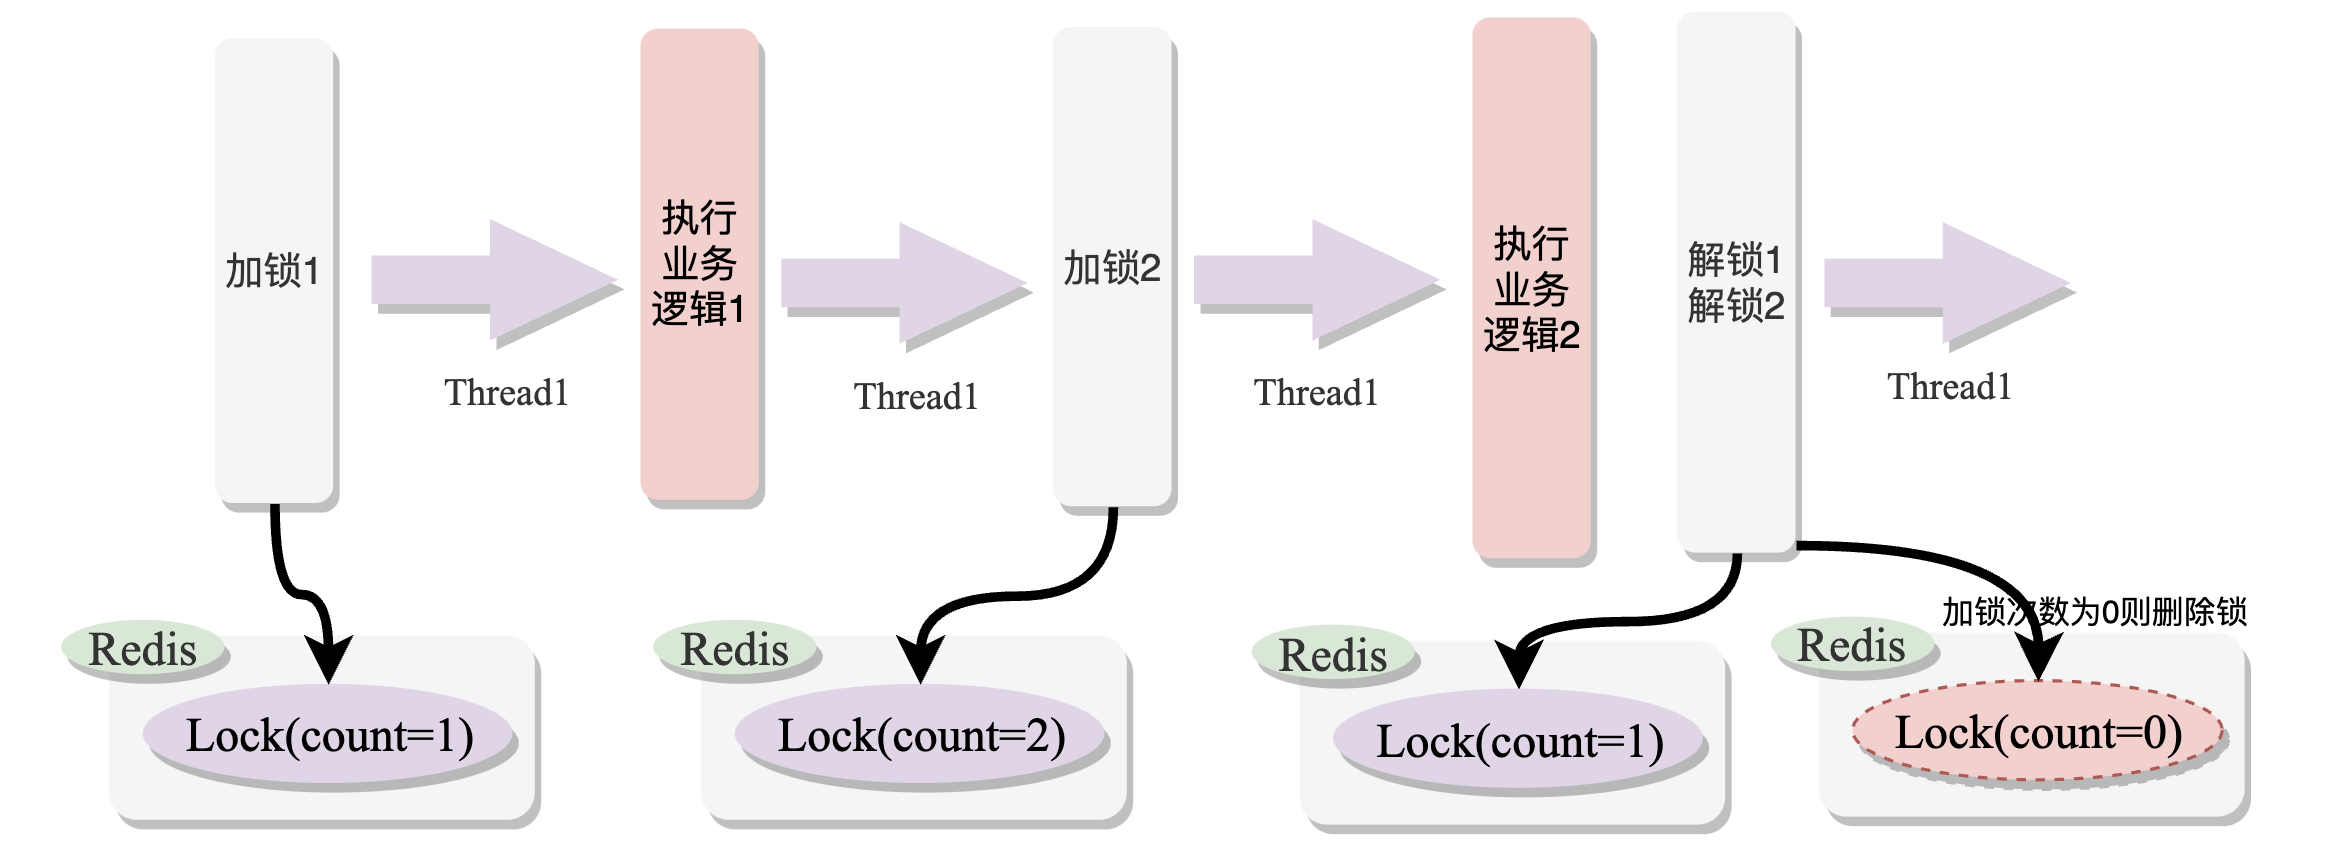 图解Redis和Zookeeper分布式锁 | 京东云技术团队